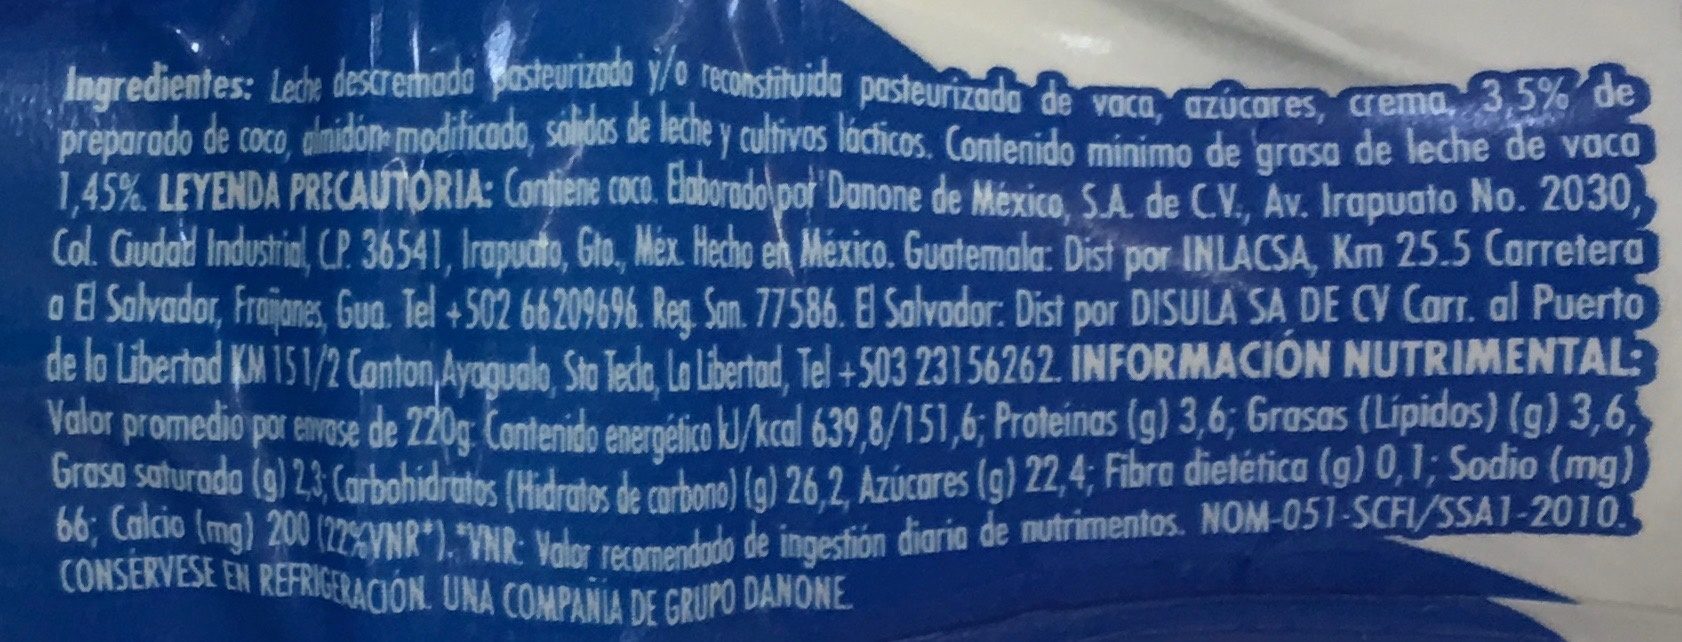 Danone Coco - Información nutricional